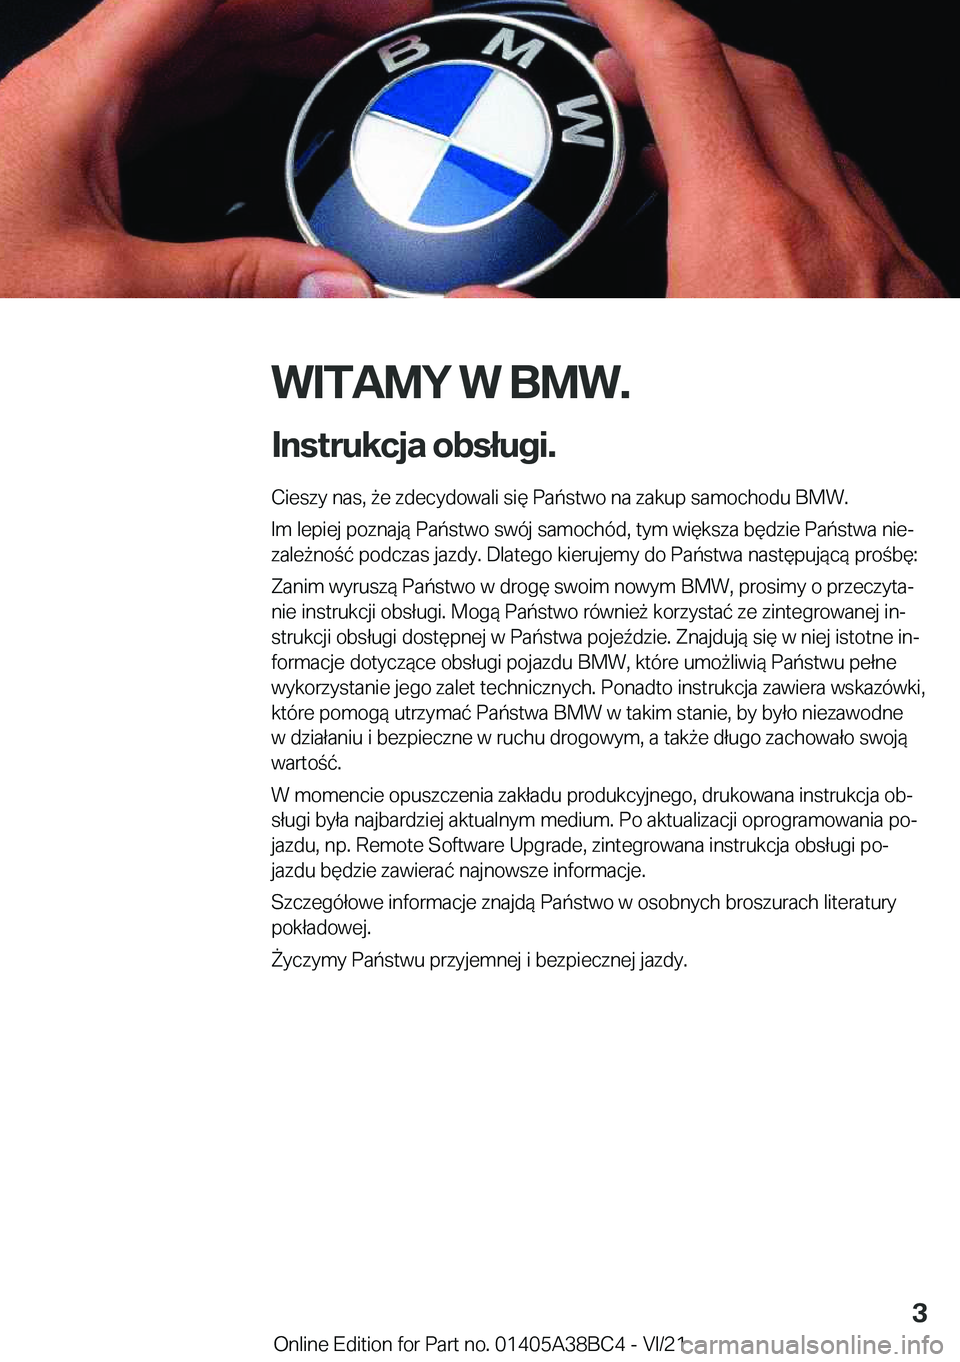 BMW M4 2022  Instrukcja obsługi (in Polish) �W�I�T�A�M�Y��W��B�M�W�.
�I�n�s�t�r�u�k�c�j�a��o�b�s�ł�u�g�i�. �C�i�e�s�z�y��n�a�s�,�9�e��z�d�e�c�y�d�o�w�a�l�i��s�i�